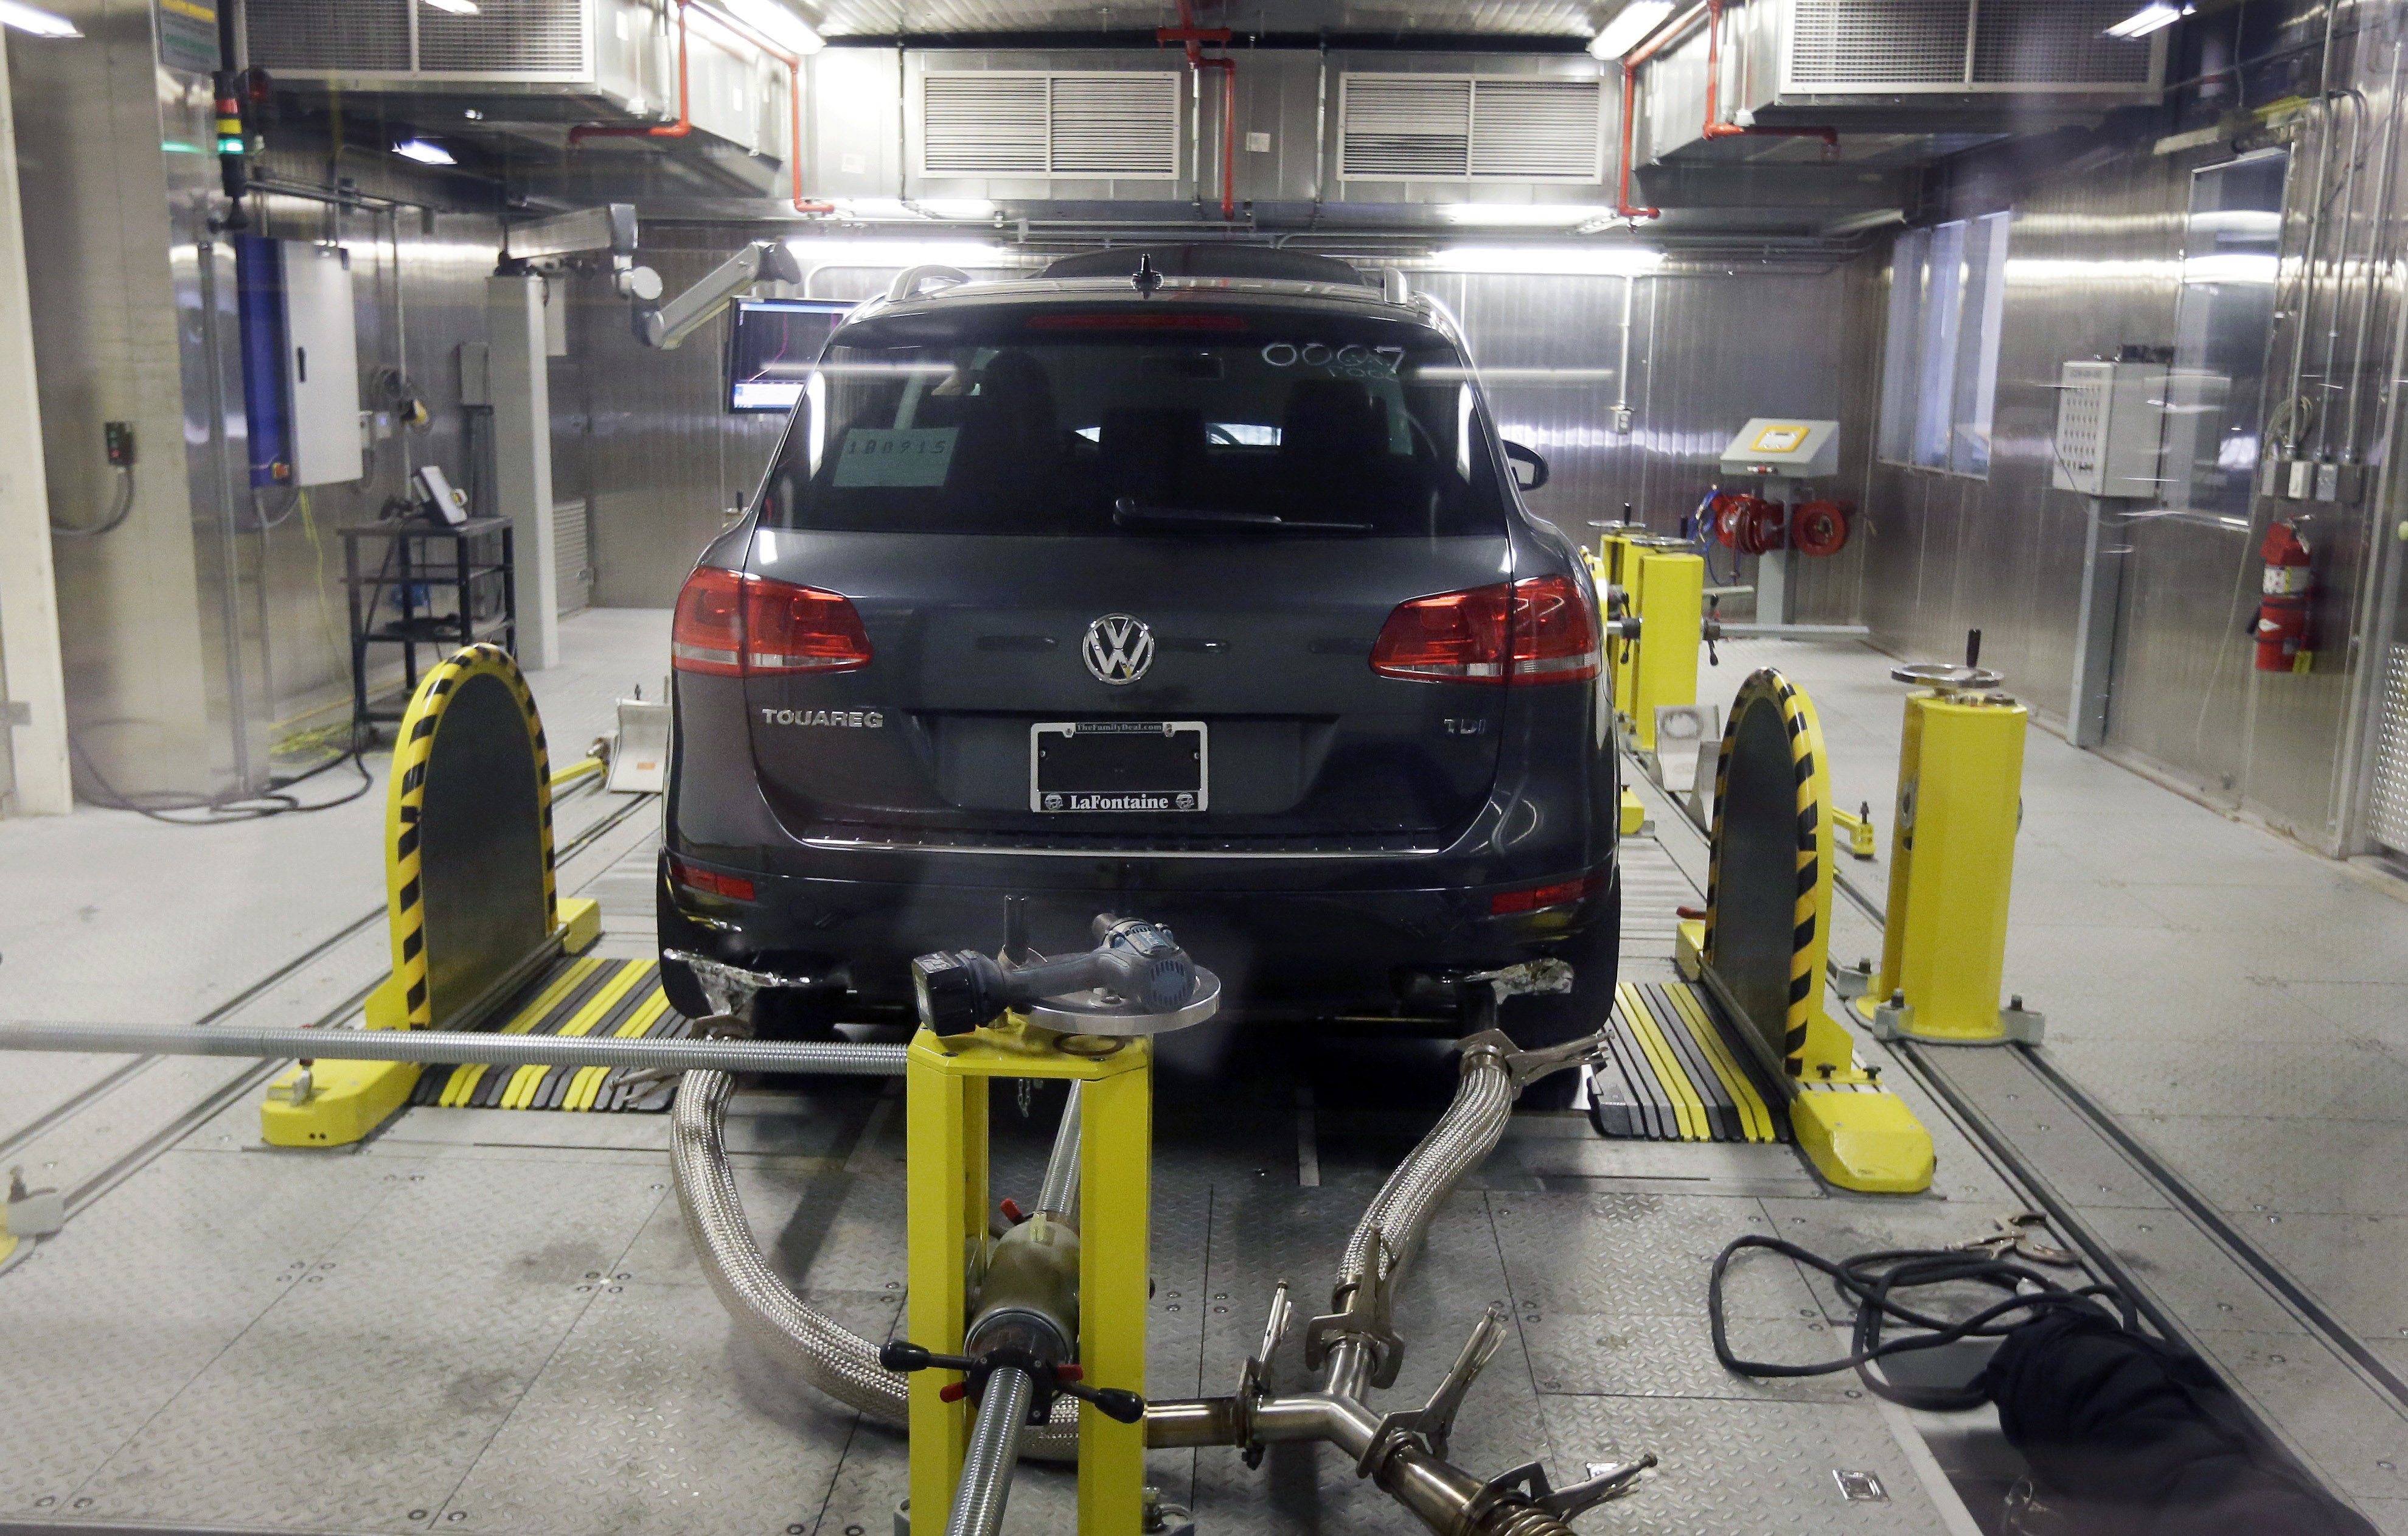 Alemania exige a VW que repare 2.4 millones de autos